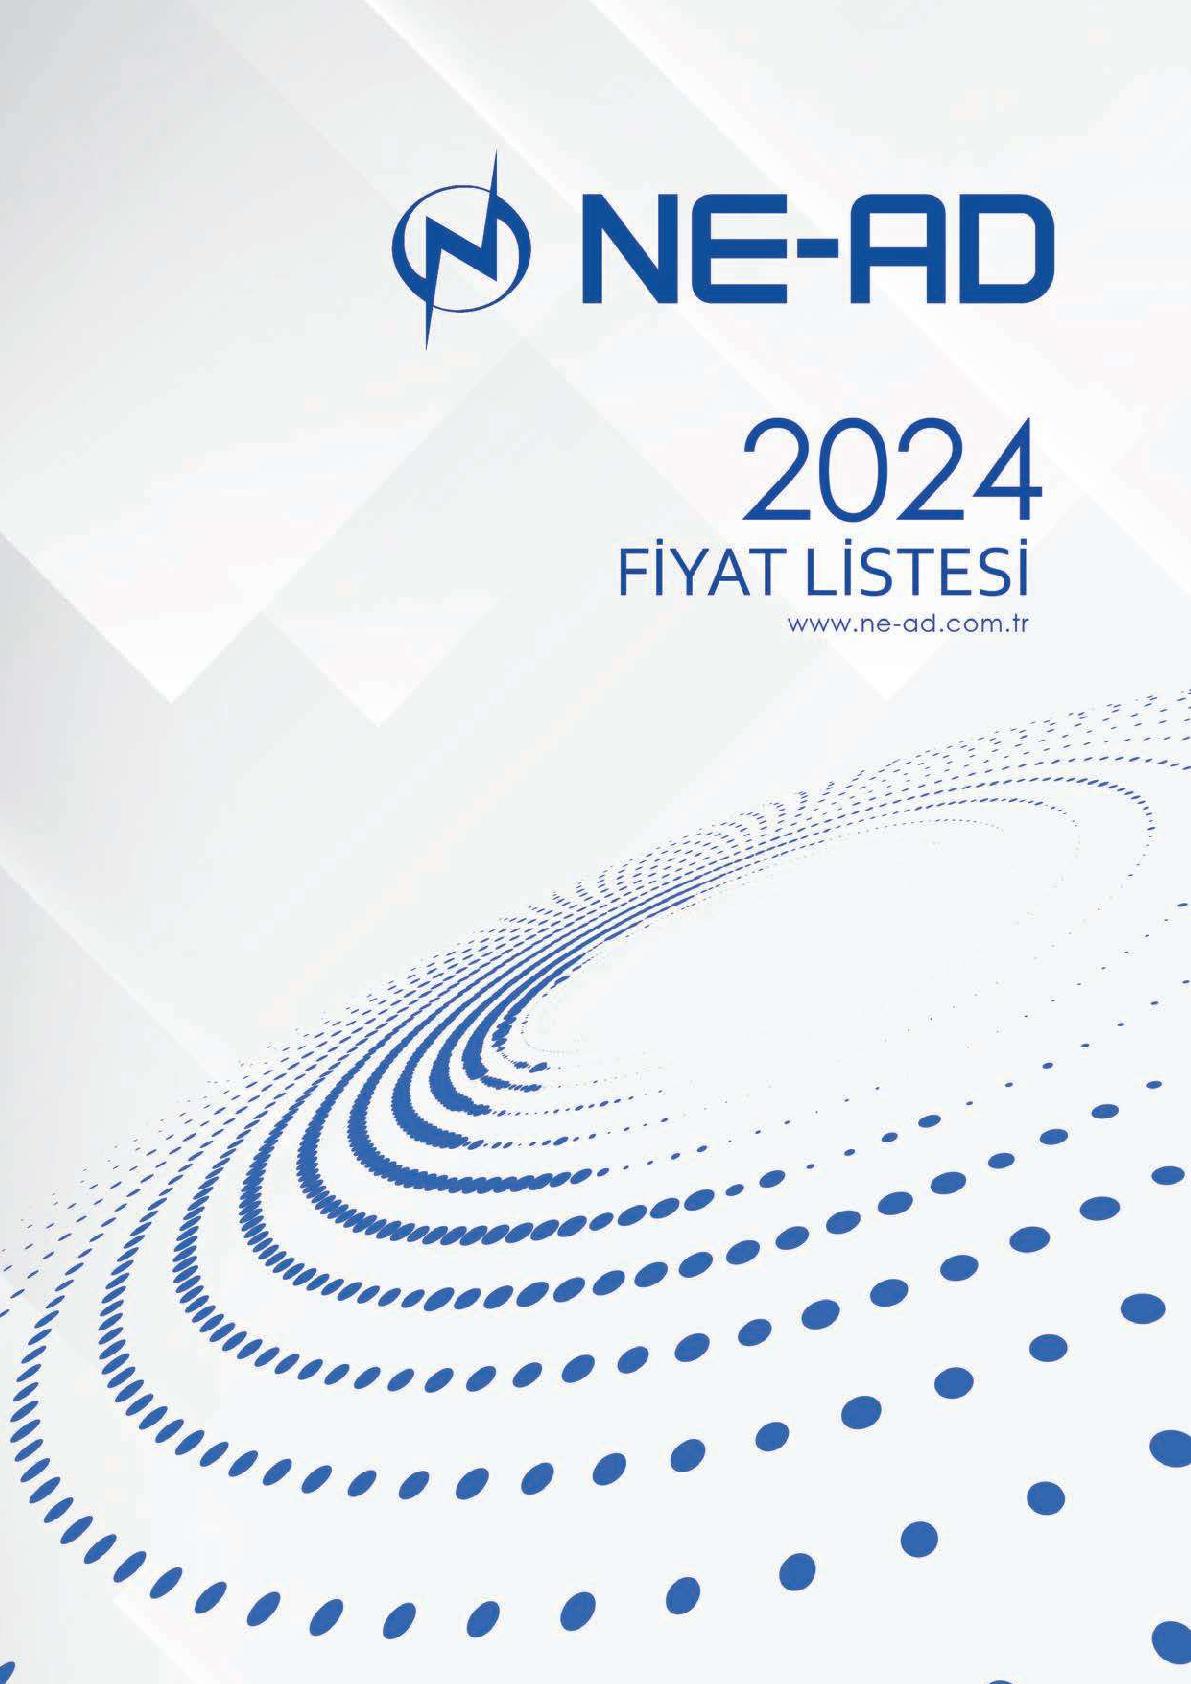 NEAD 2024 Özbek Enerji | Elektrik Malzemeleri Toptan ve Perakende Satışı